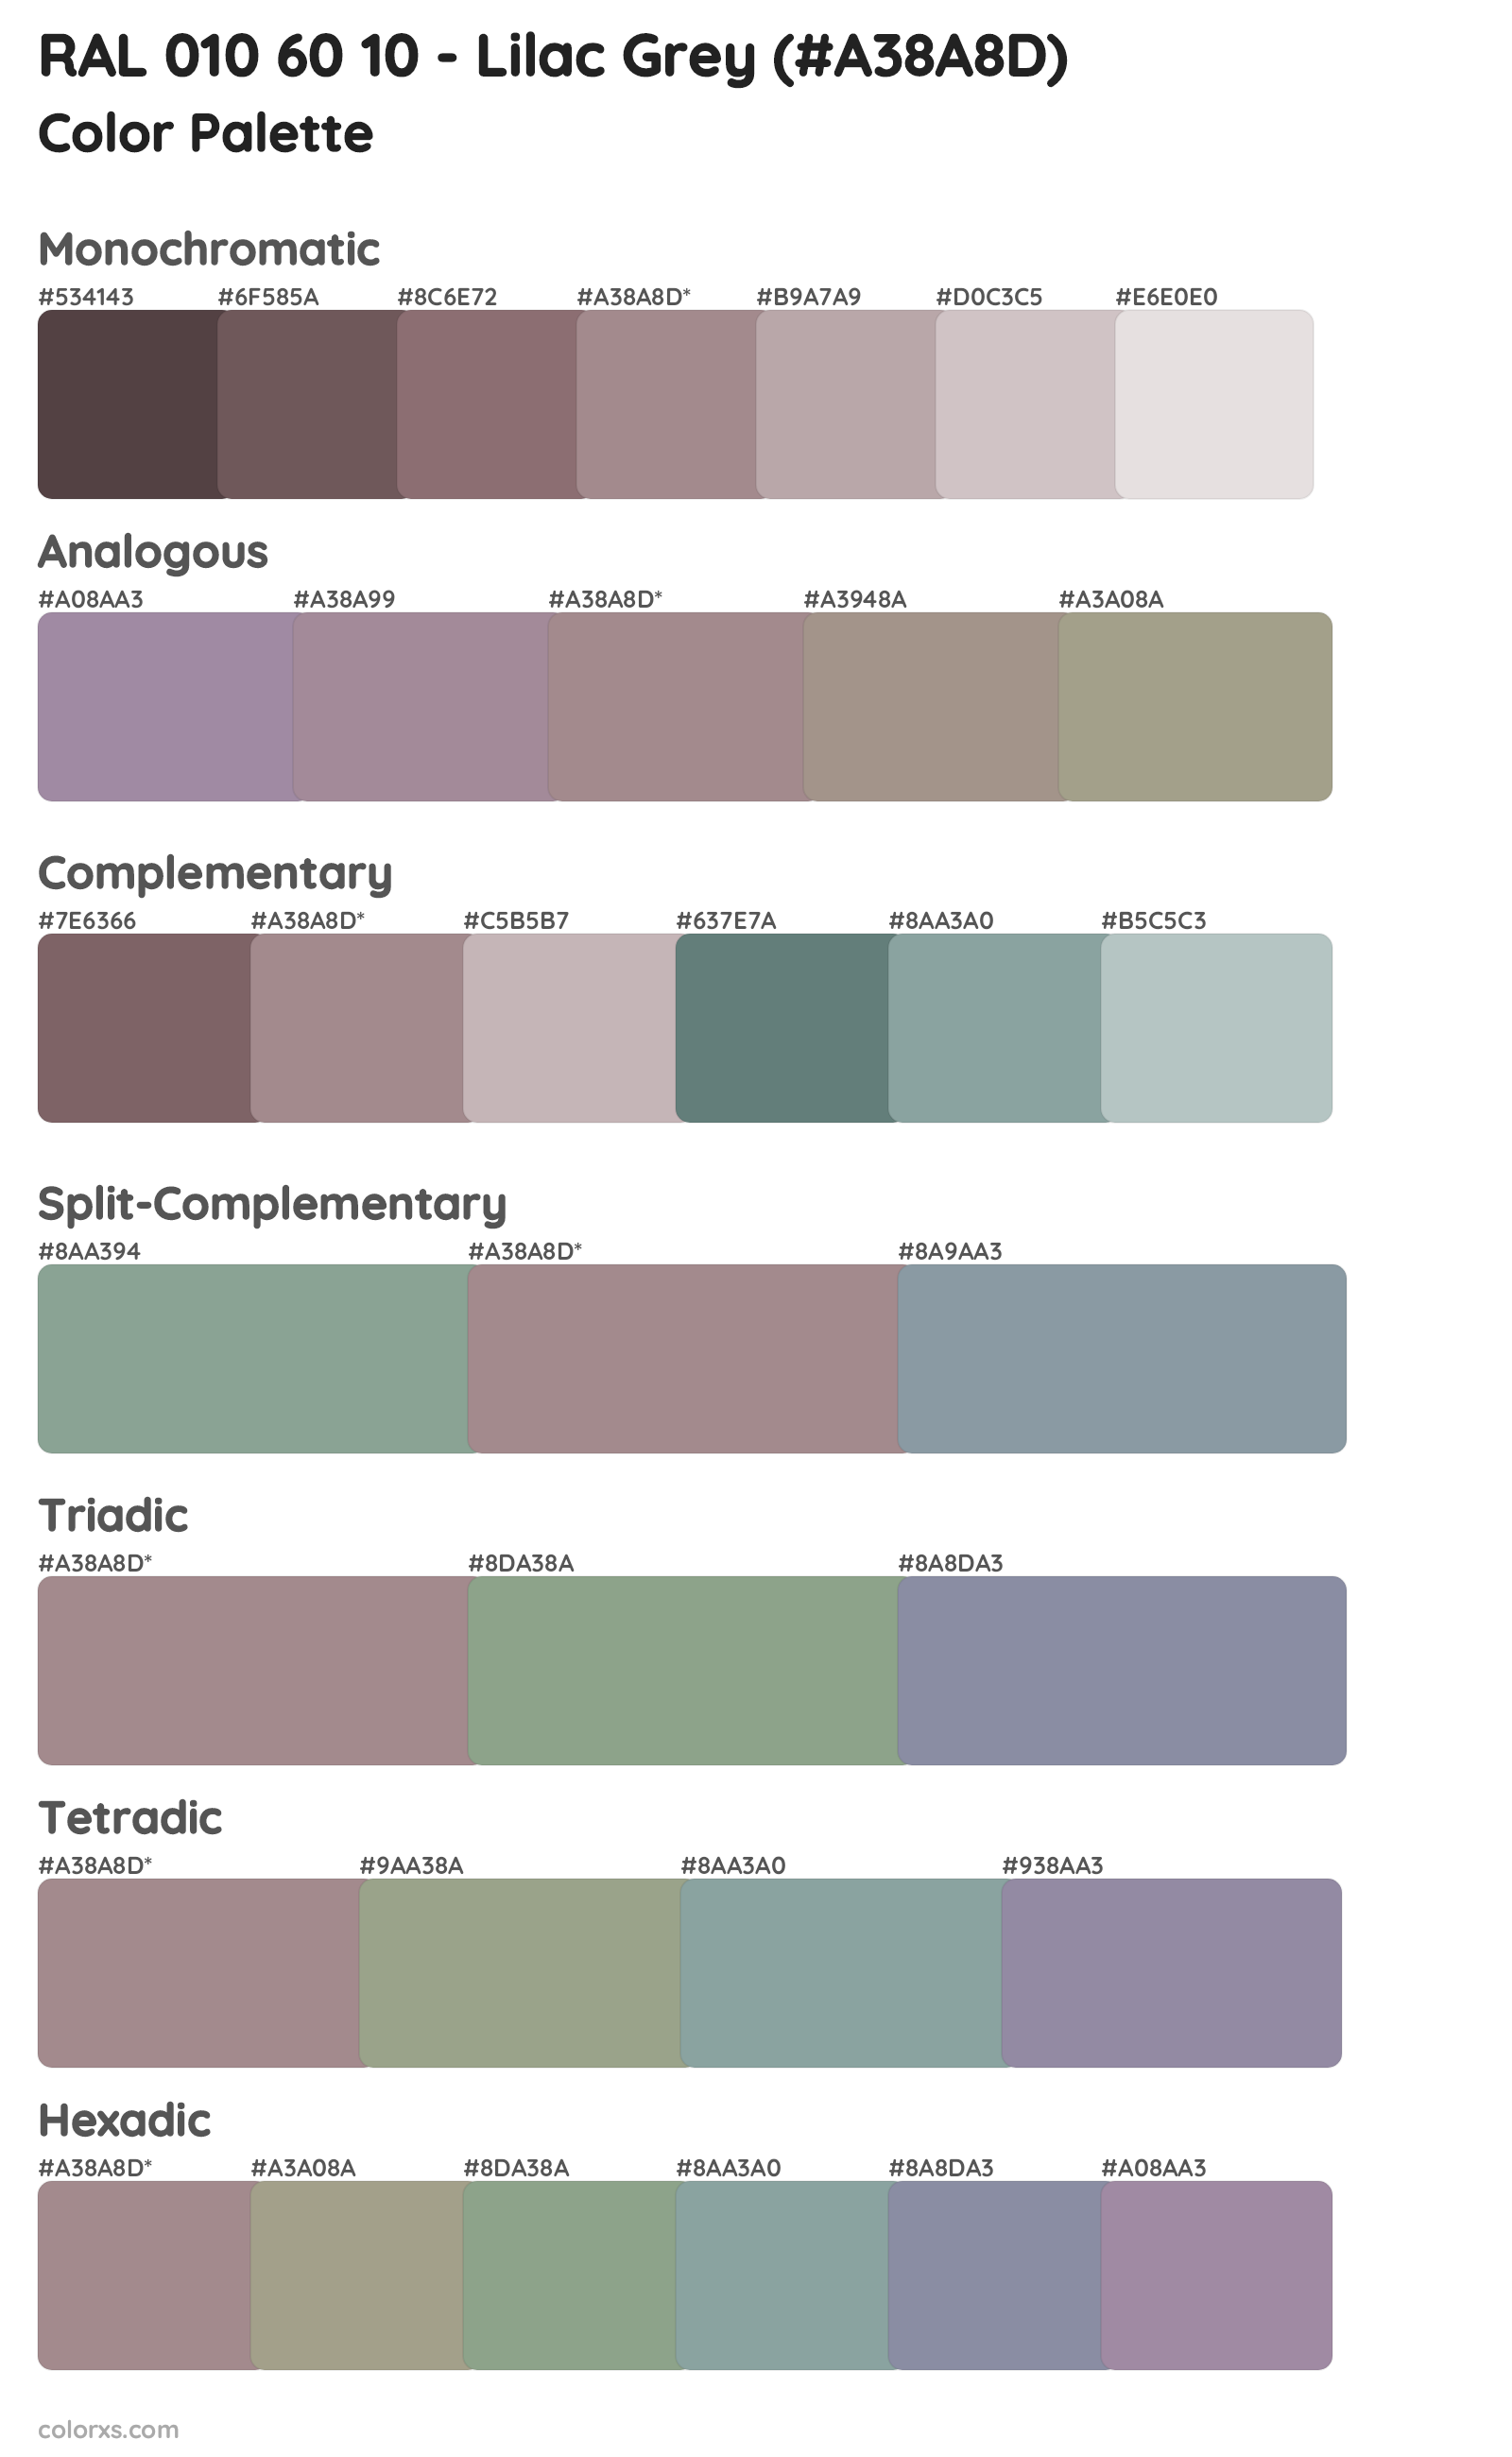 RAL 010 60 10 - Lilac Grey Color Scheme Palettes